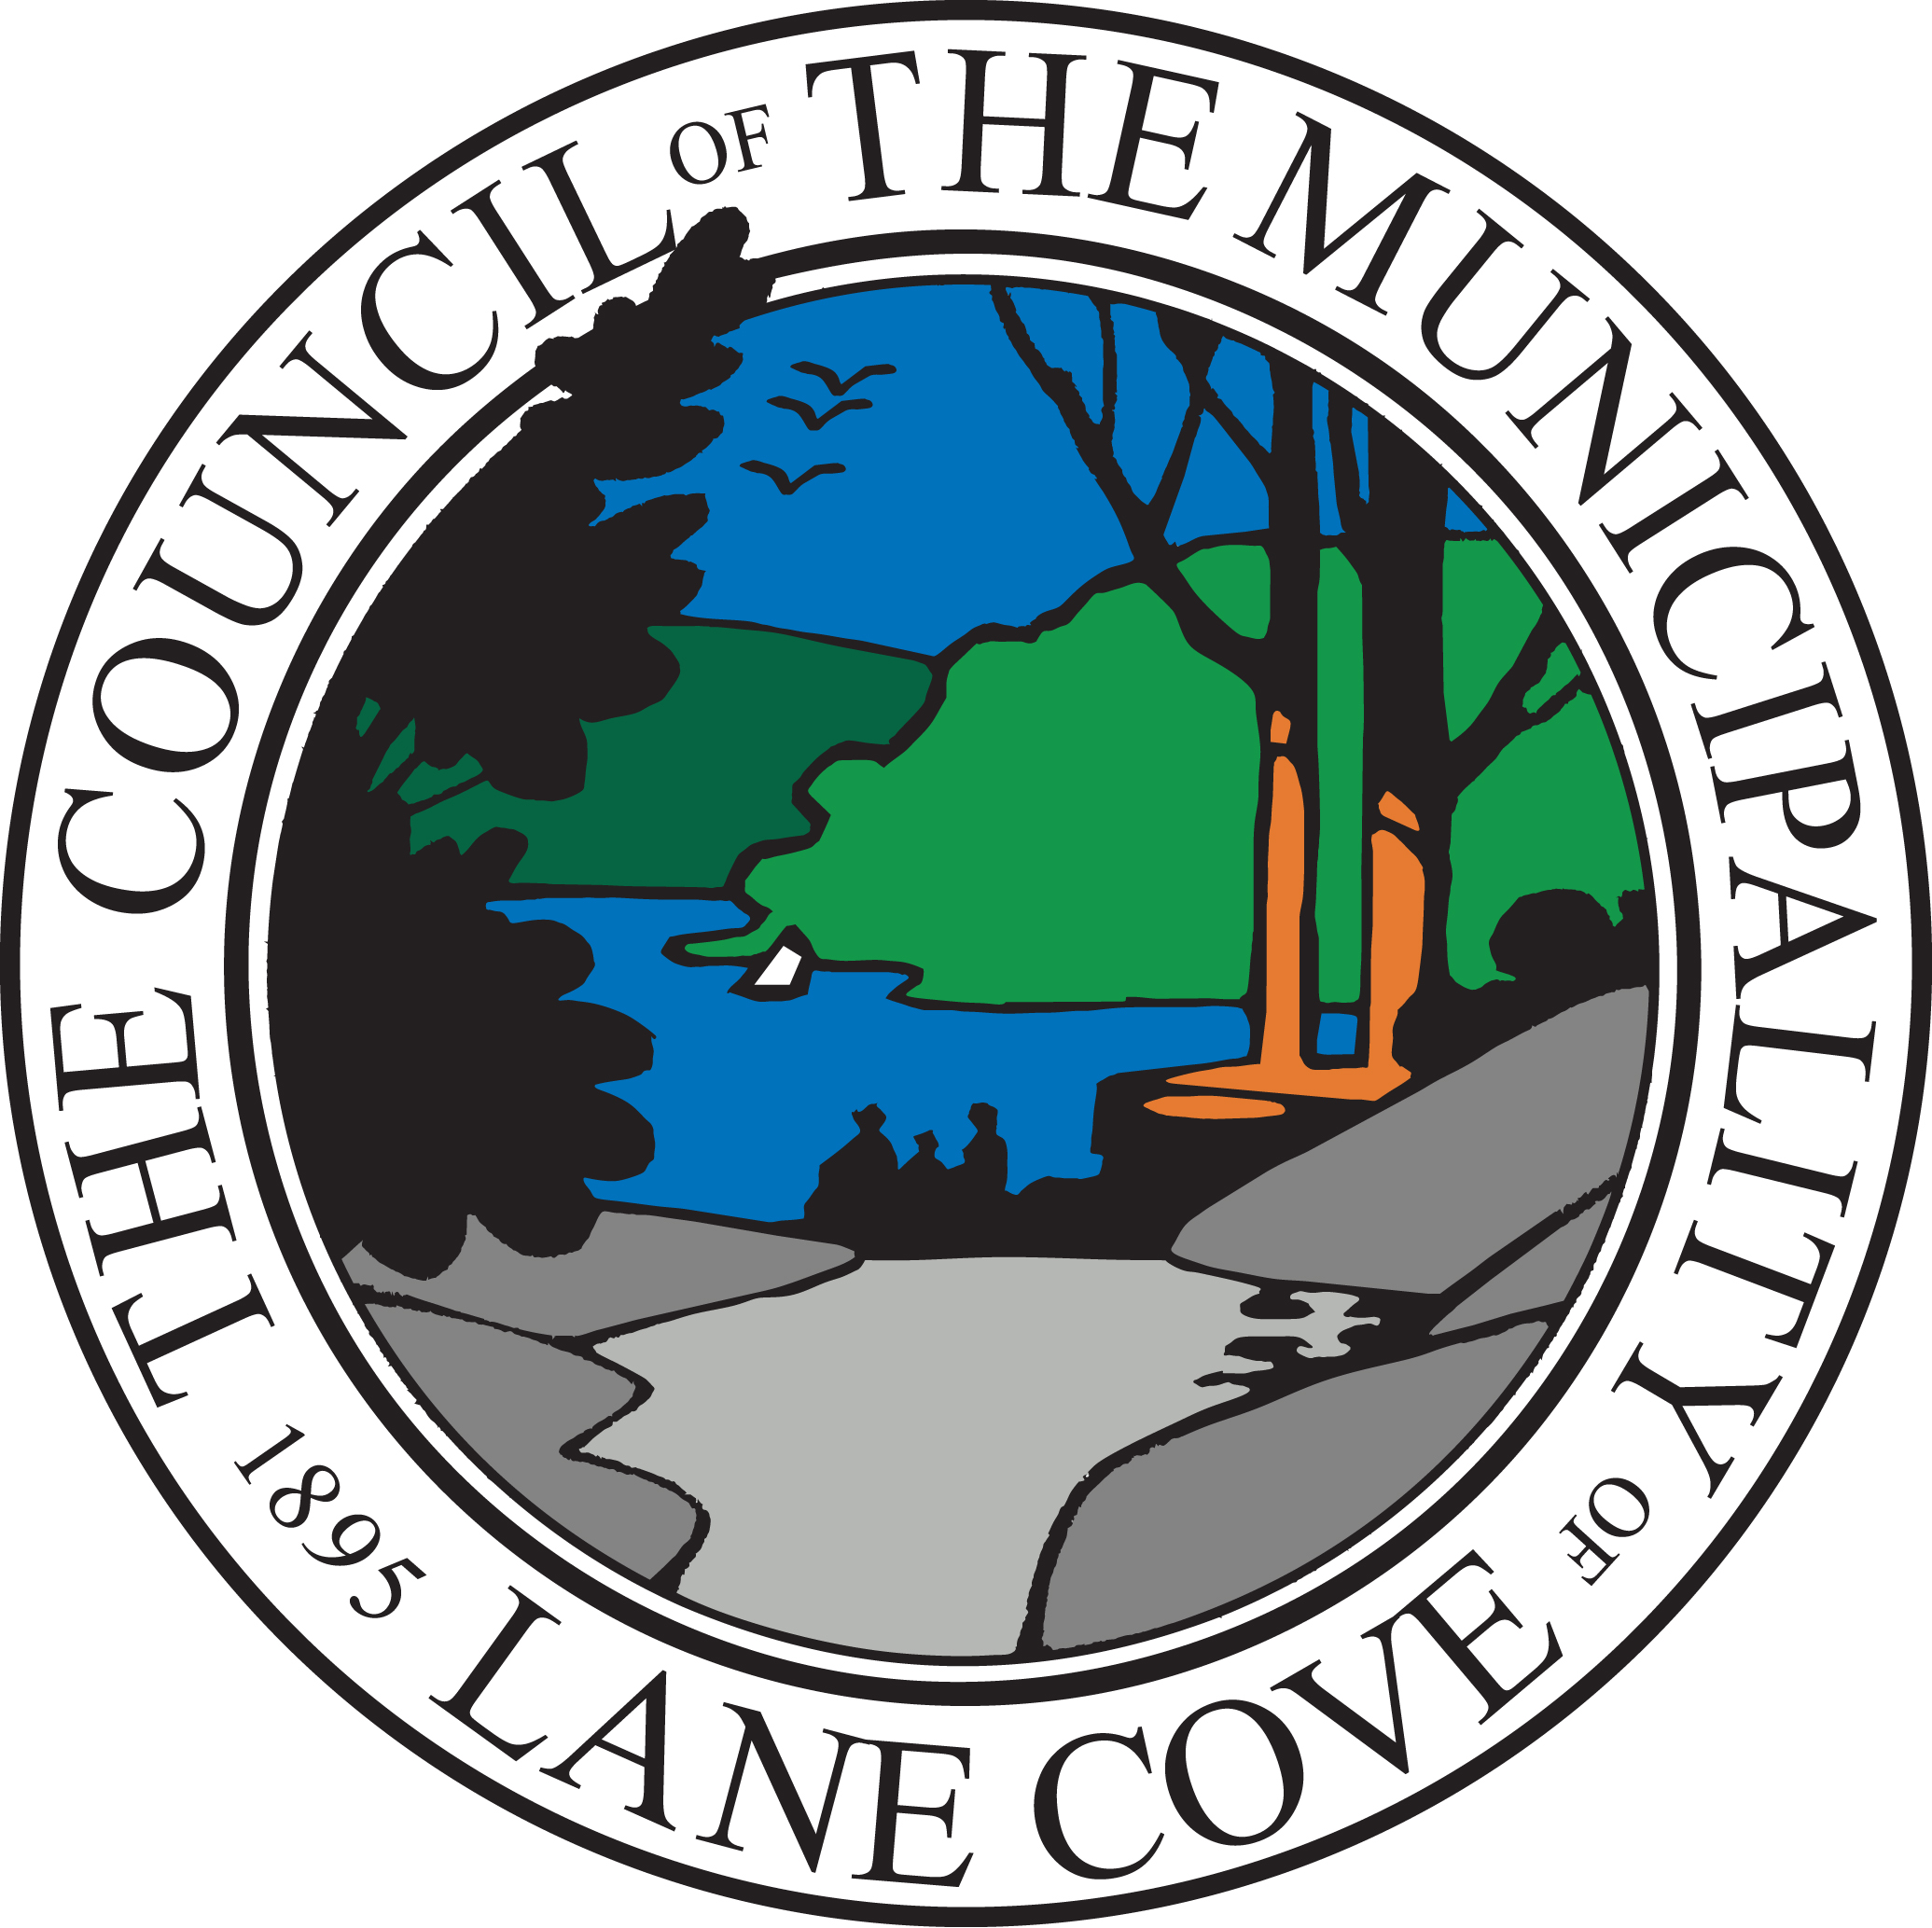 Lane Cove Council Building Pre-Commencement Inspection Report